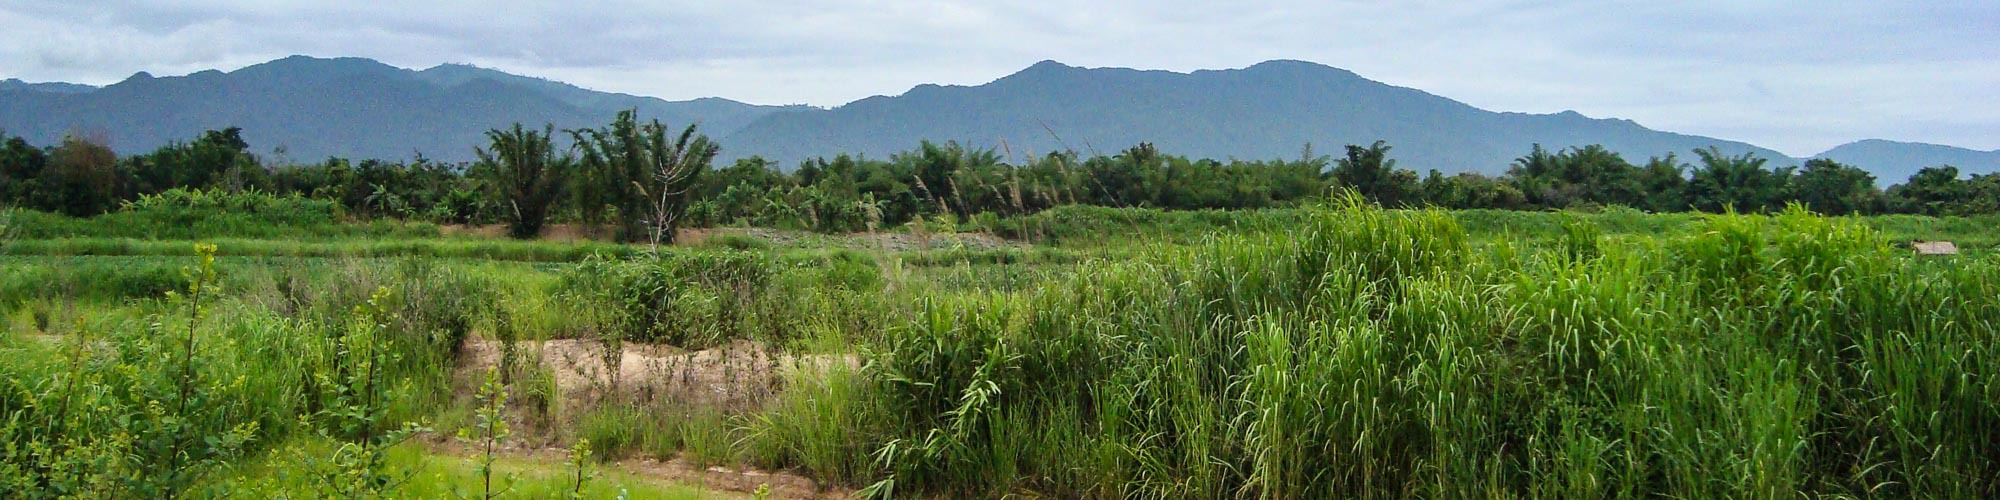 เทิง, เชียงราย, ประเทศไทย: ที่ดินเปล่า เหมาะสำหรับทำการเกษตร เช่นปลูกยางพารา ปลูกปาล์มน้ำมัน